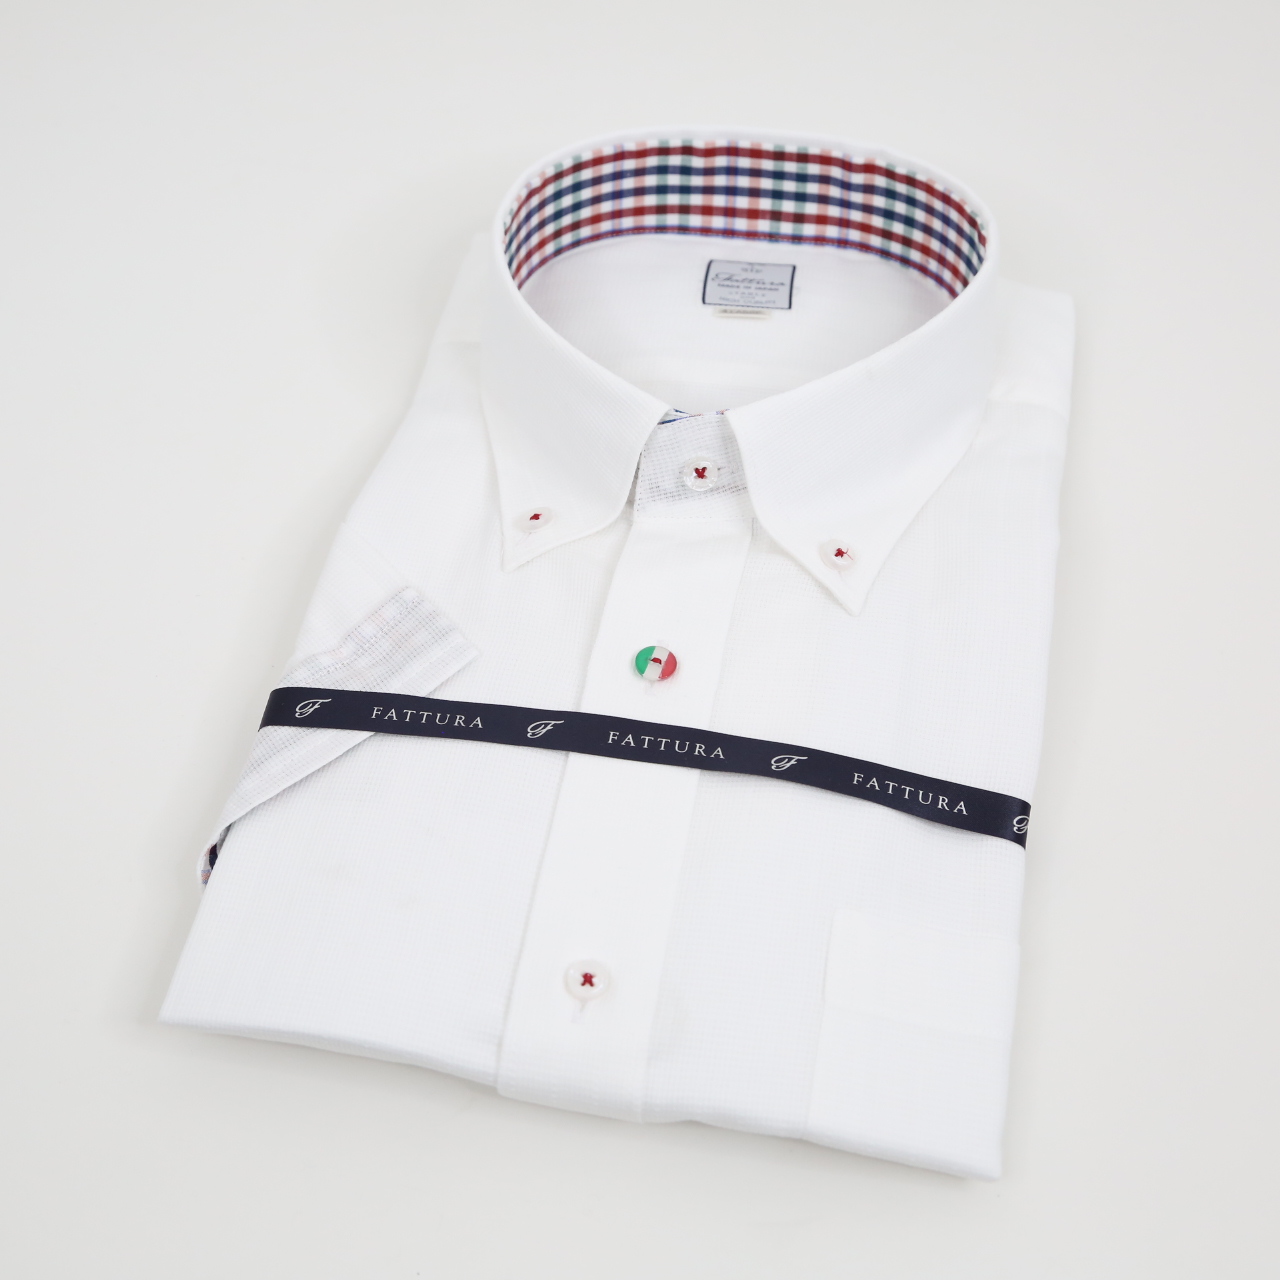 半袖シャツ  ビッグサイズ  形態安定  ボタンダウン  シングル  第一特殊ボタン   ホワイト  日本製